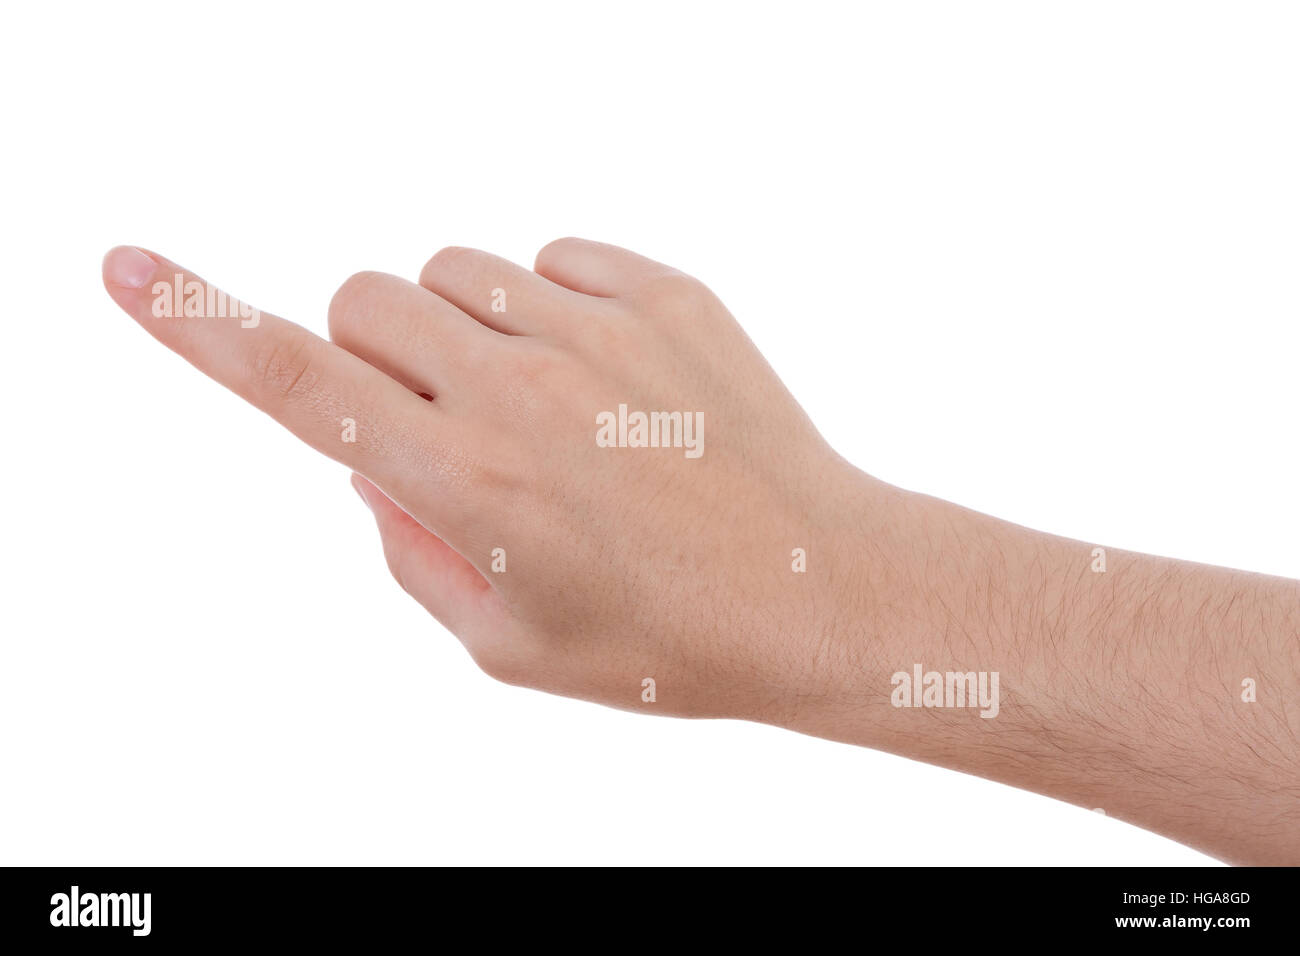 Main pointant, touchant ou en appuyant sur isolé sur fond blanc. Les femmes de race blanche. Banque D'Images